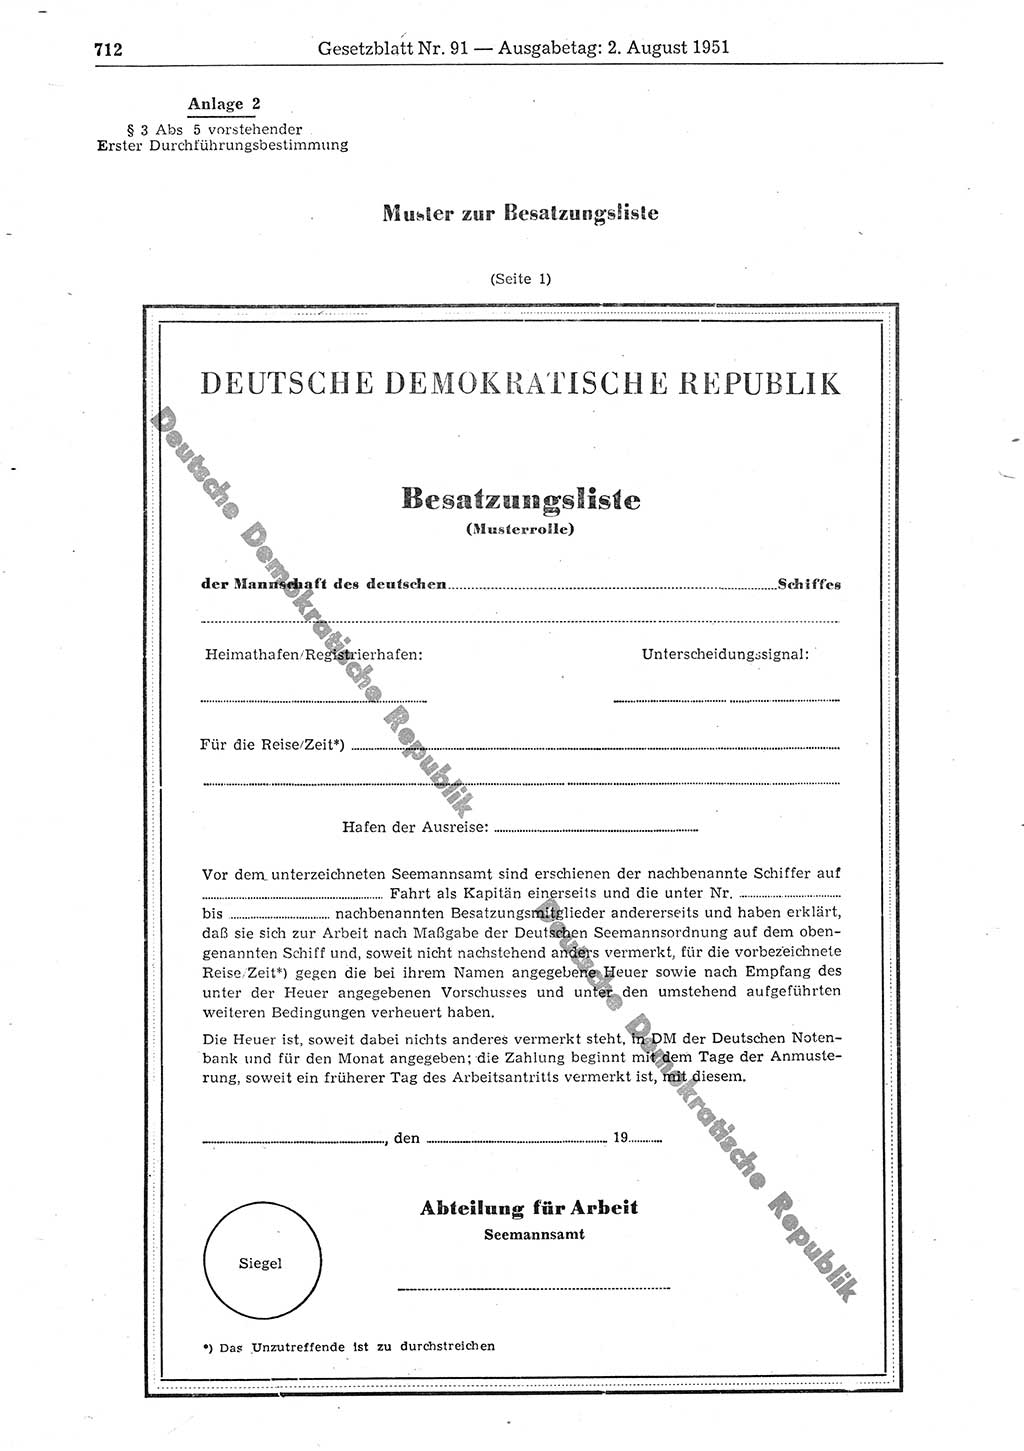 Gesetzblatt (GBl.) der Deutschen Demokratischen Republik (DDR) 1951, Seite 712 (GBl. DDR 1951, S. 712)